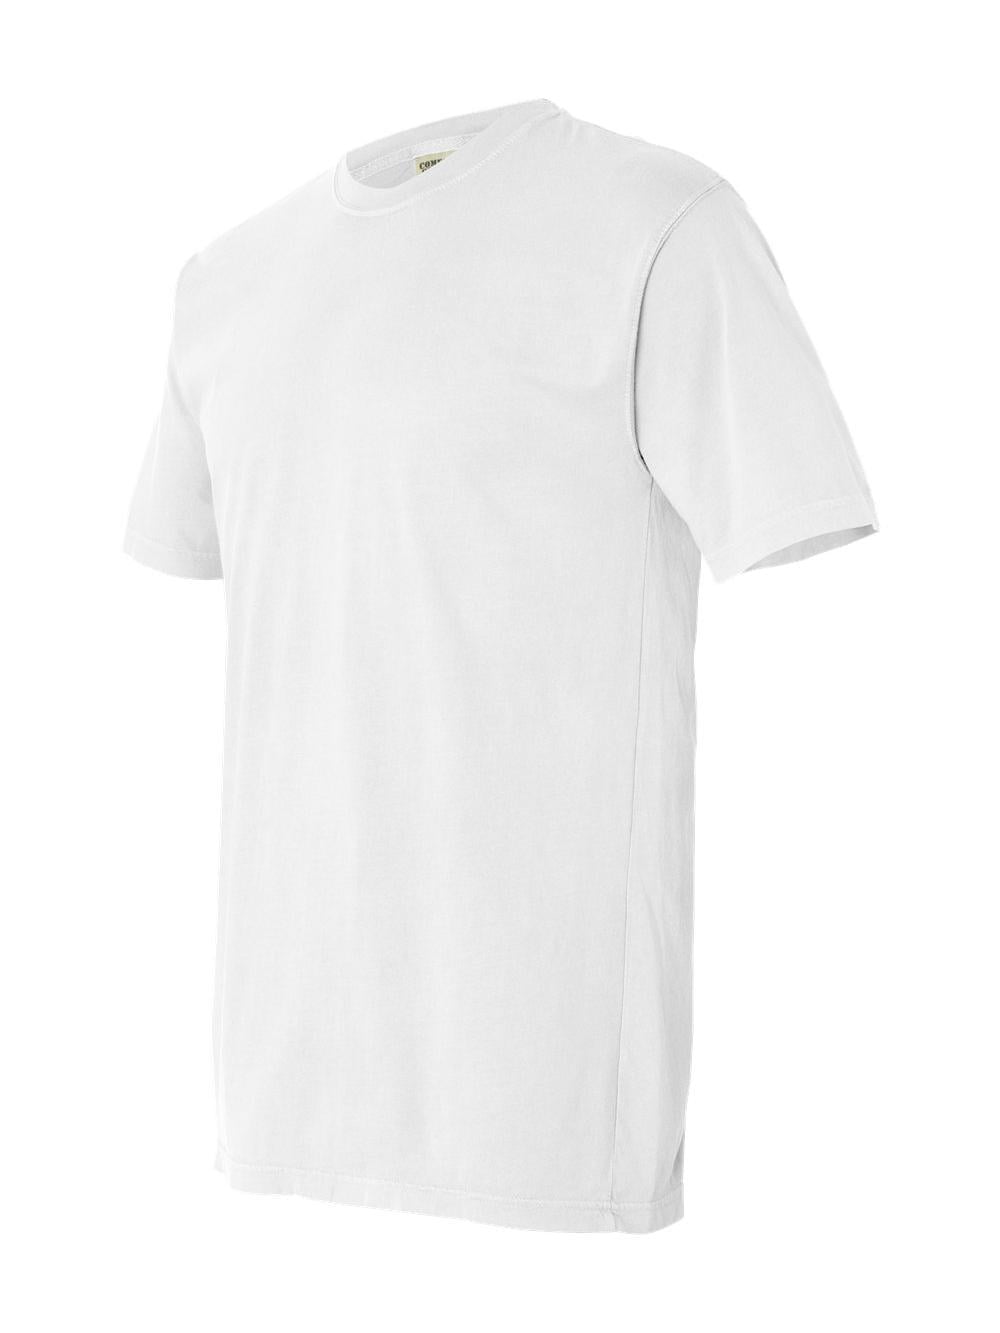 majoor Ultieme Politiebureau Comfort Colors - Garment-Dyed Lightweight T-Shirt - 4017 - White - Size: XL  - Walmart.com